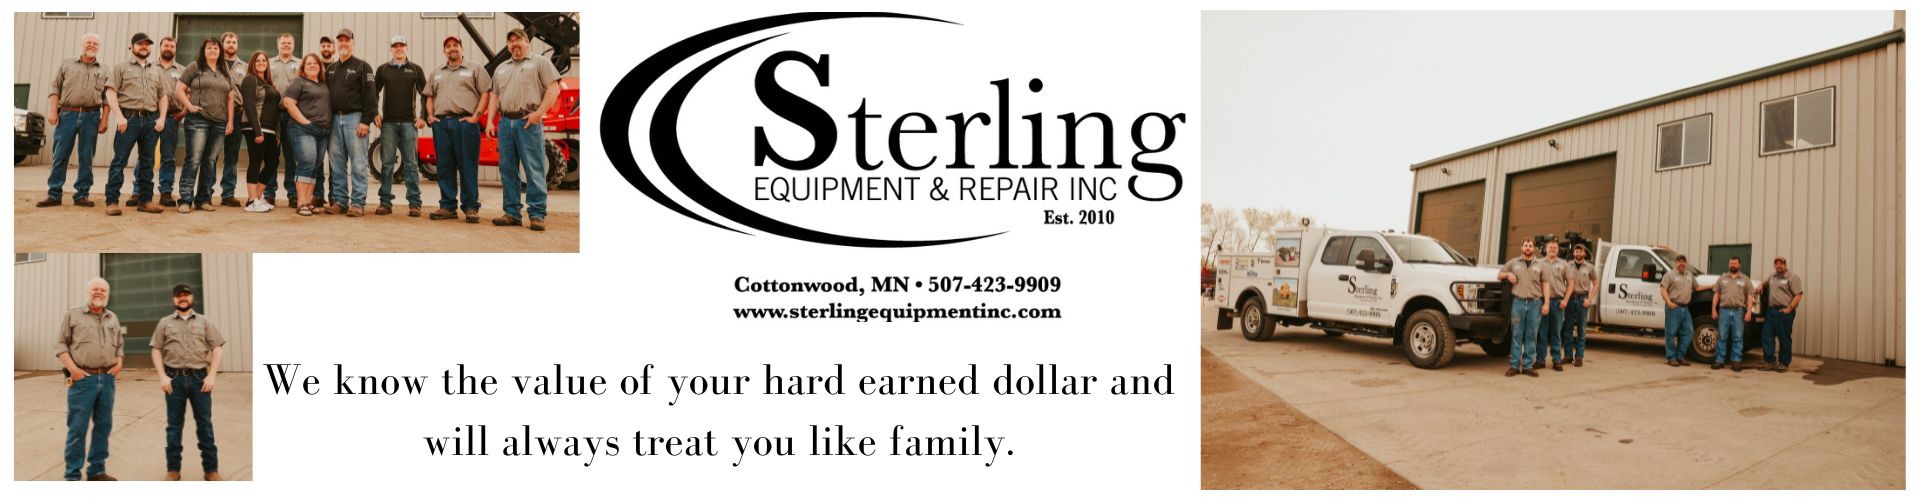 Sterling Banner Website